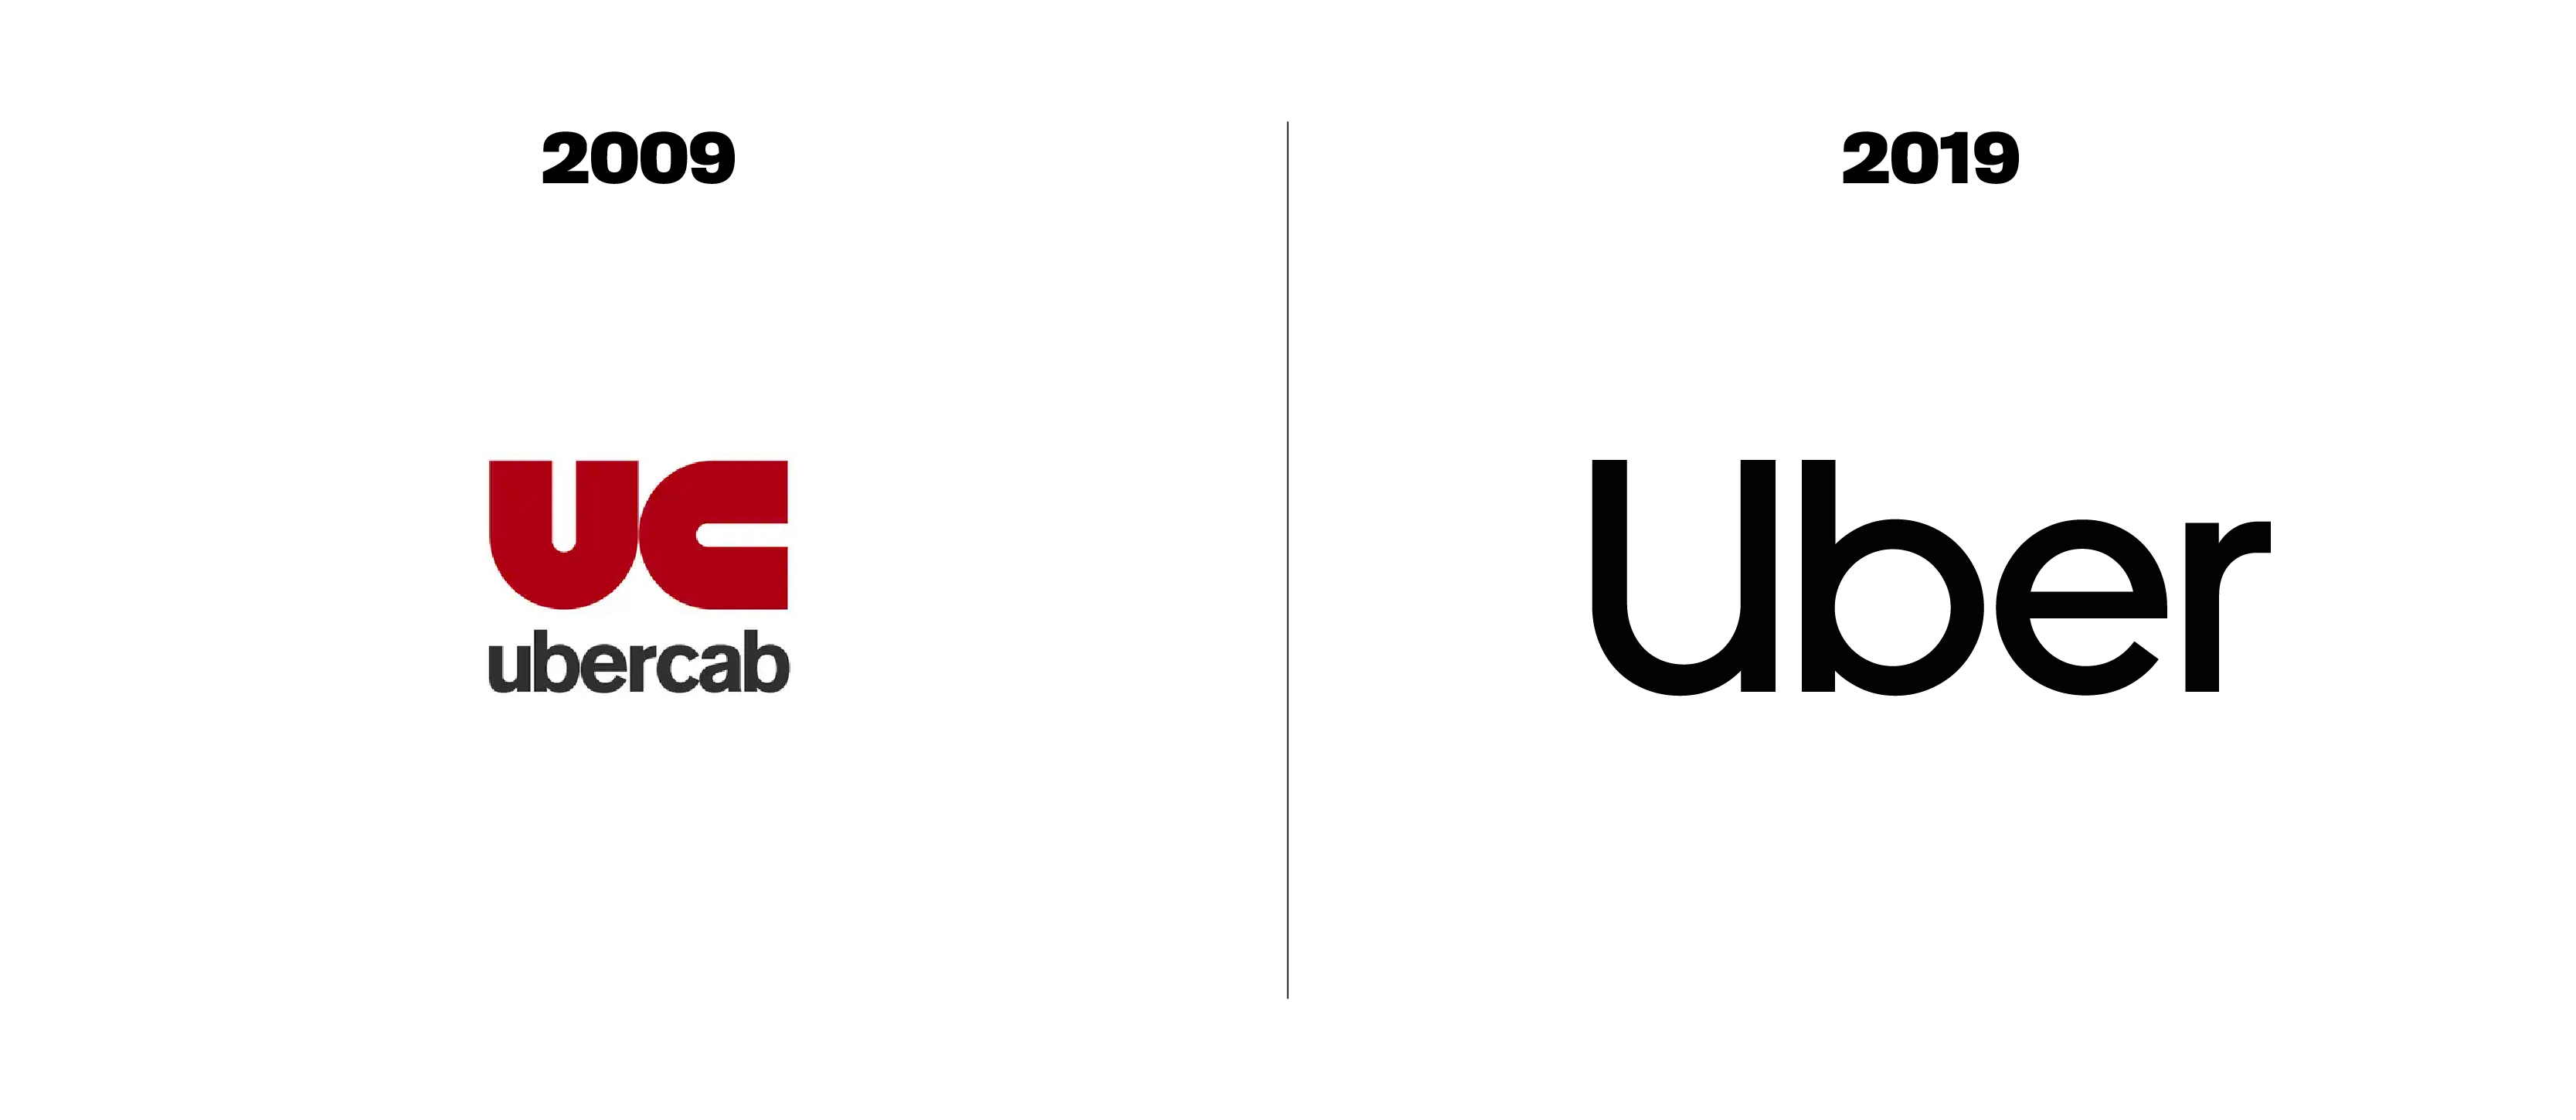 uber-logo-old-vs-new-2009-2019